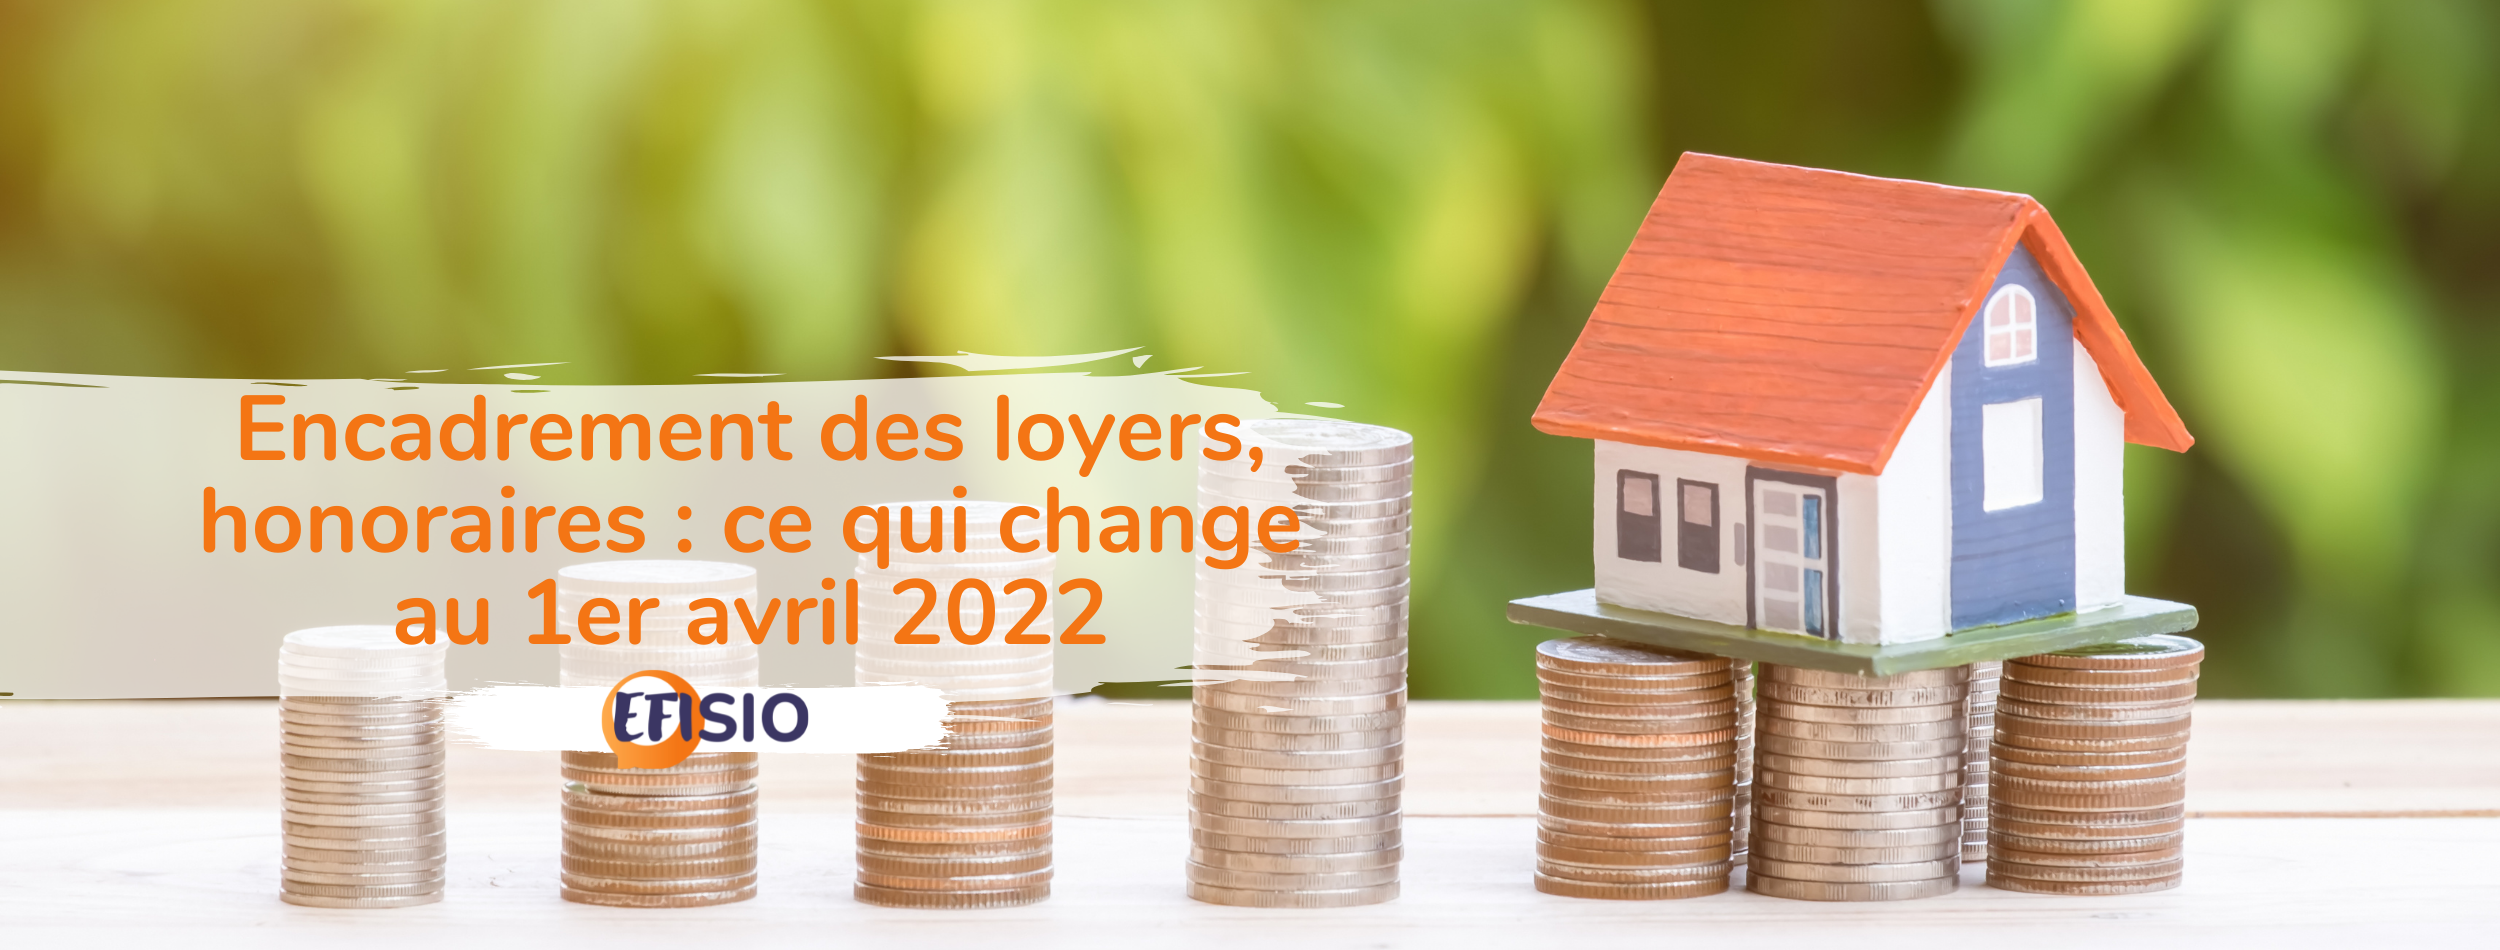 Encadrement des loyers, honoraires : ce qui change au 1er avril 2022